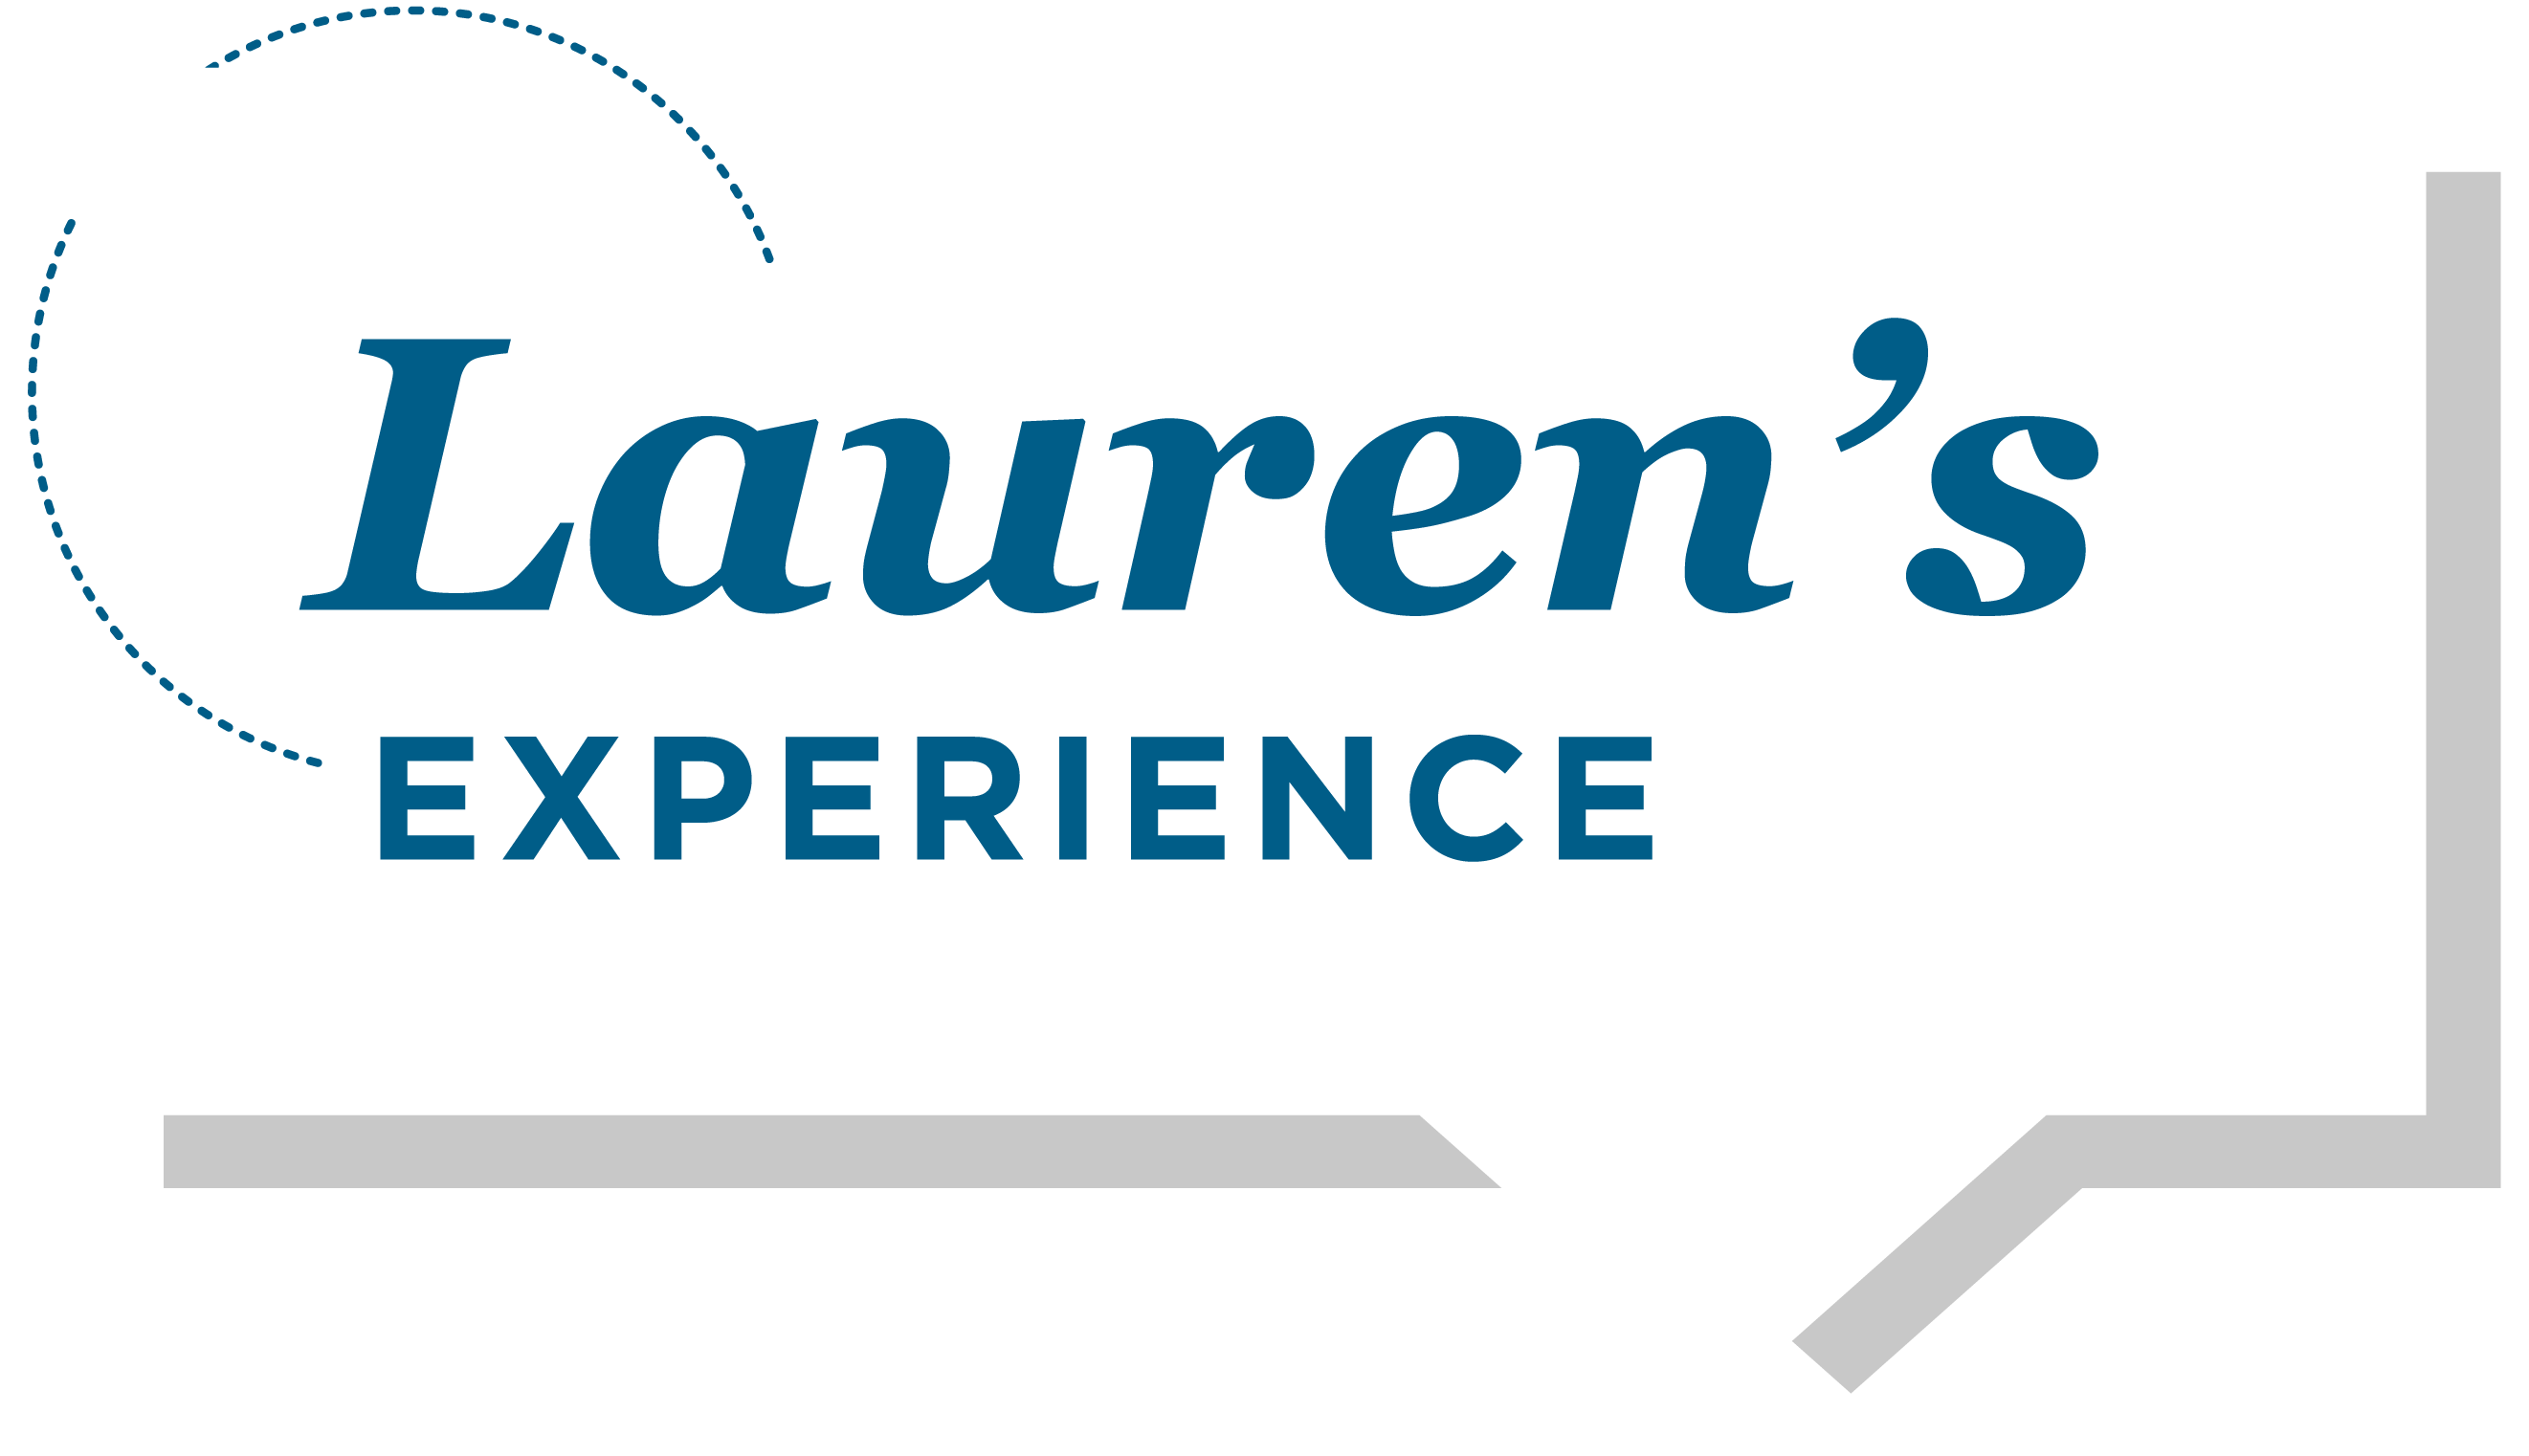 Lauren's Experience